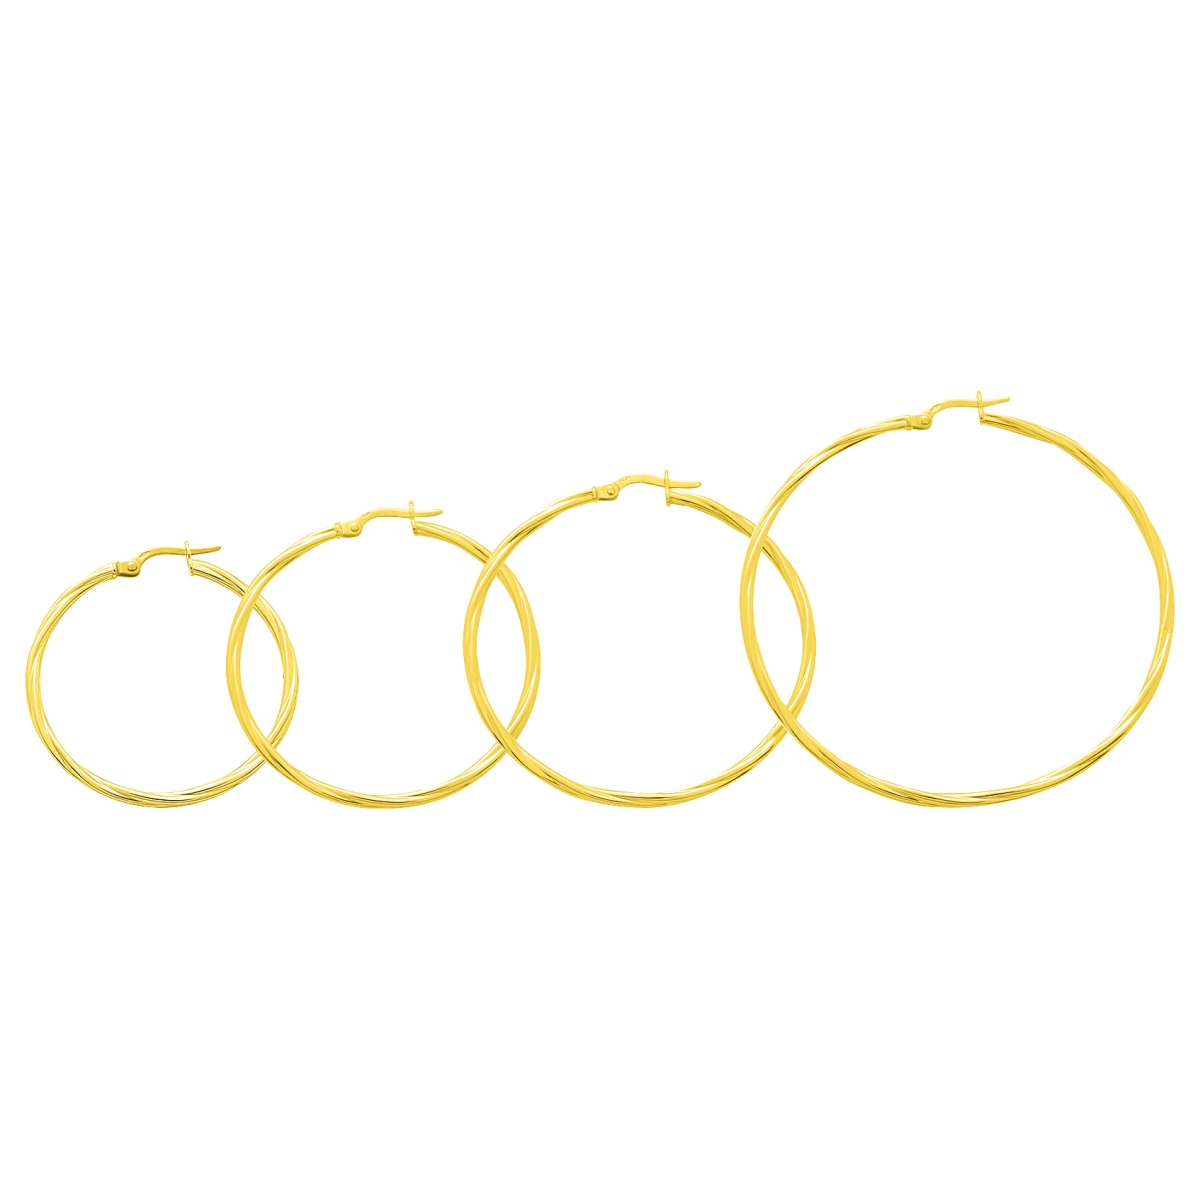 Brincos Anéis par torcido 9Kt Ouro amarelo 650003.7 Lua blanca 650003.7.0